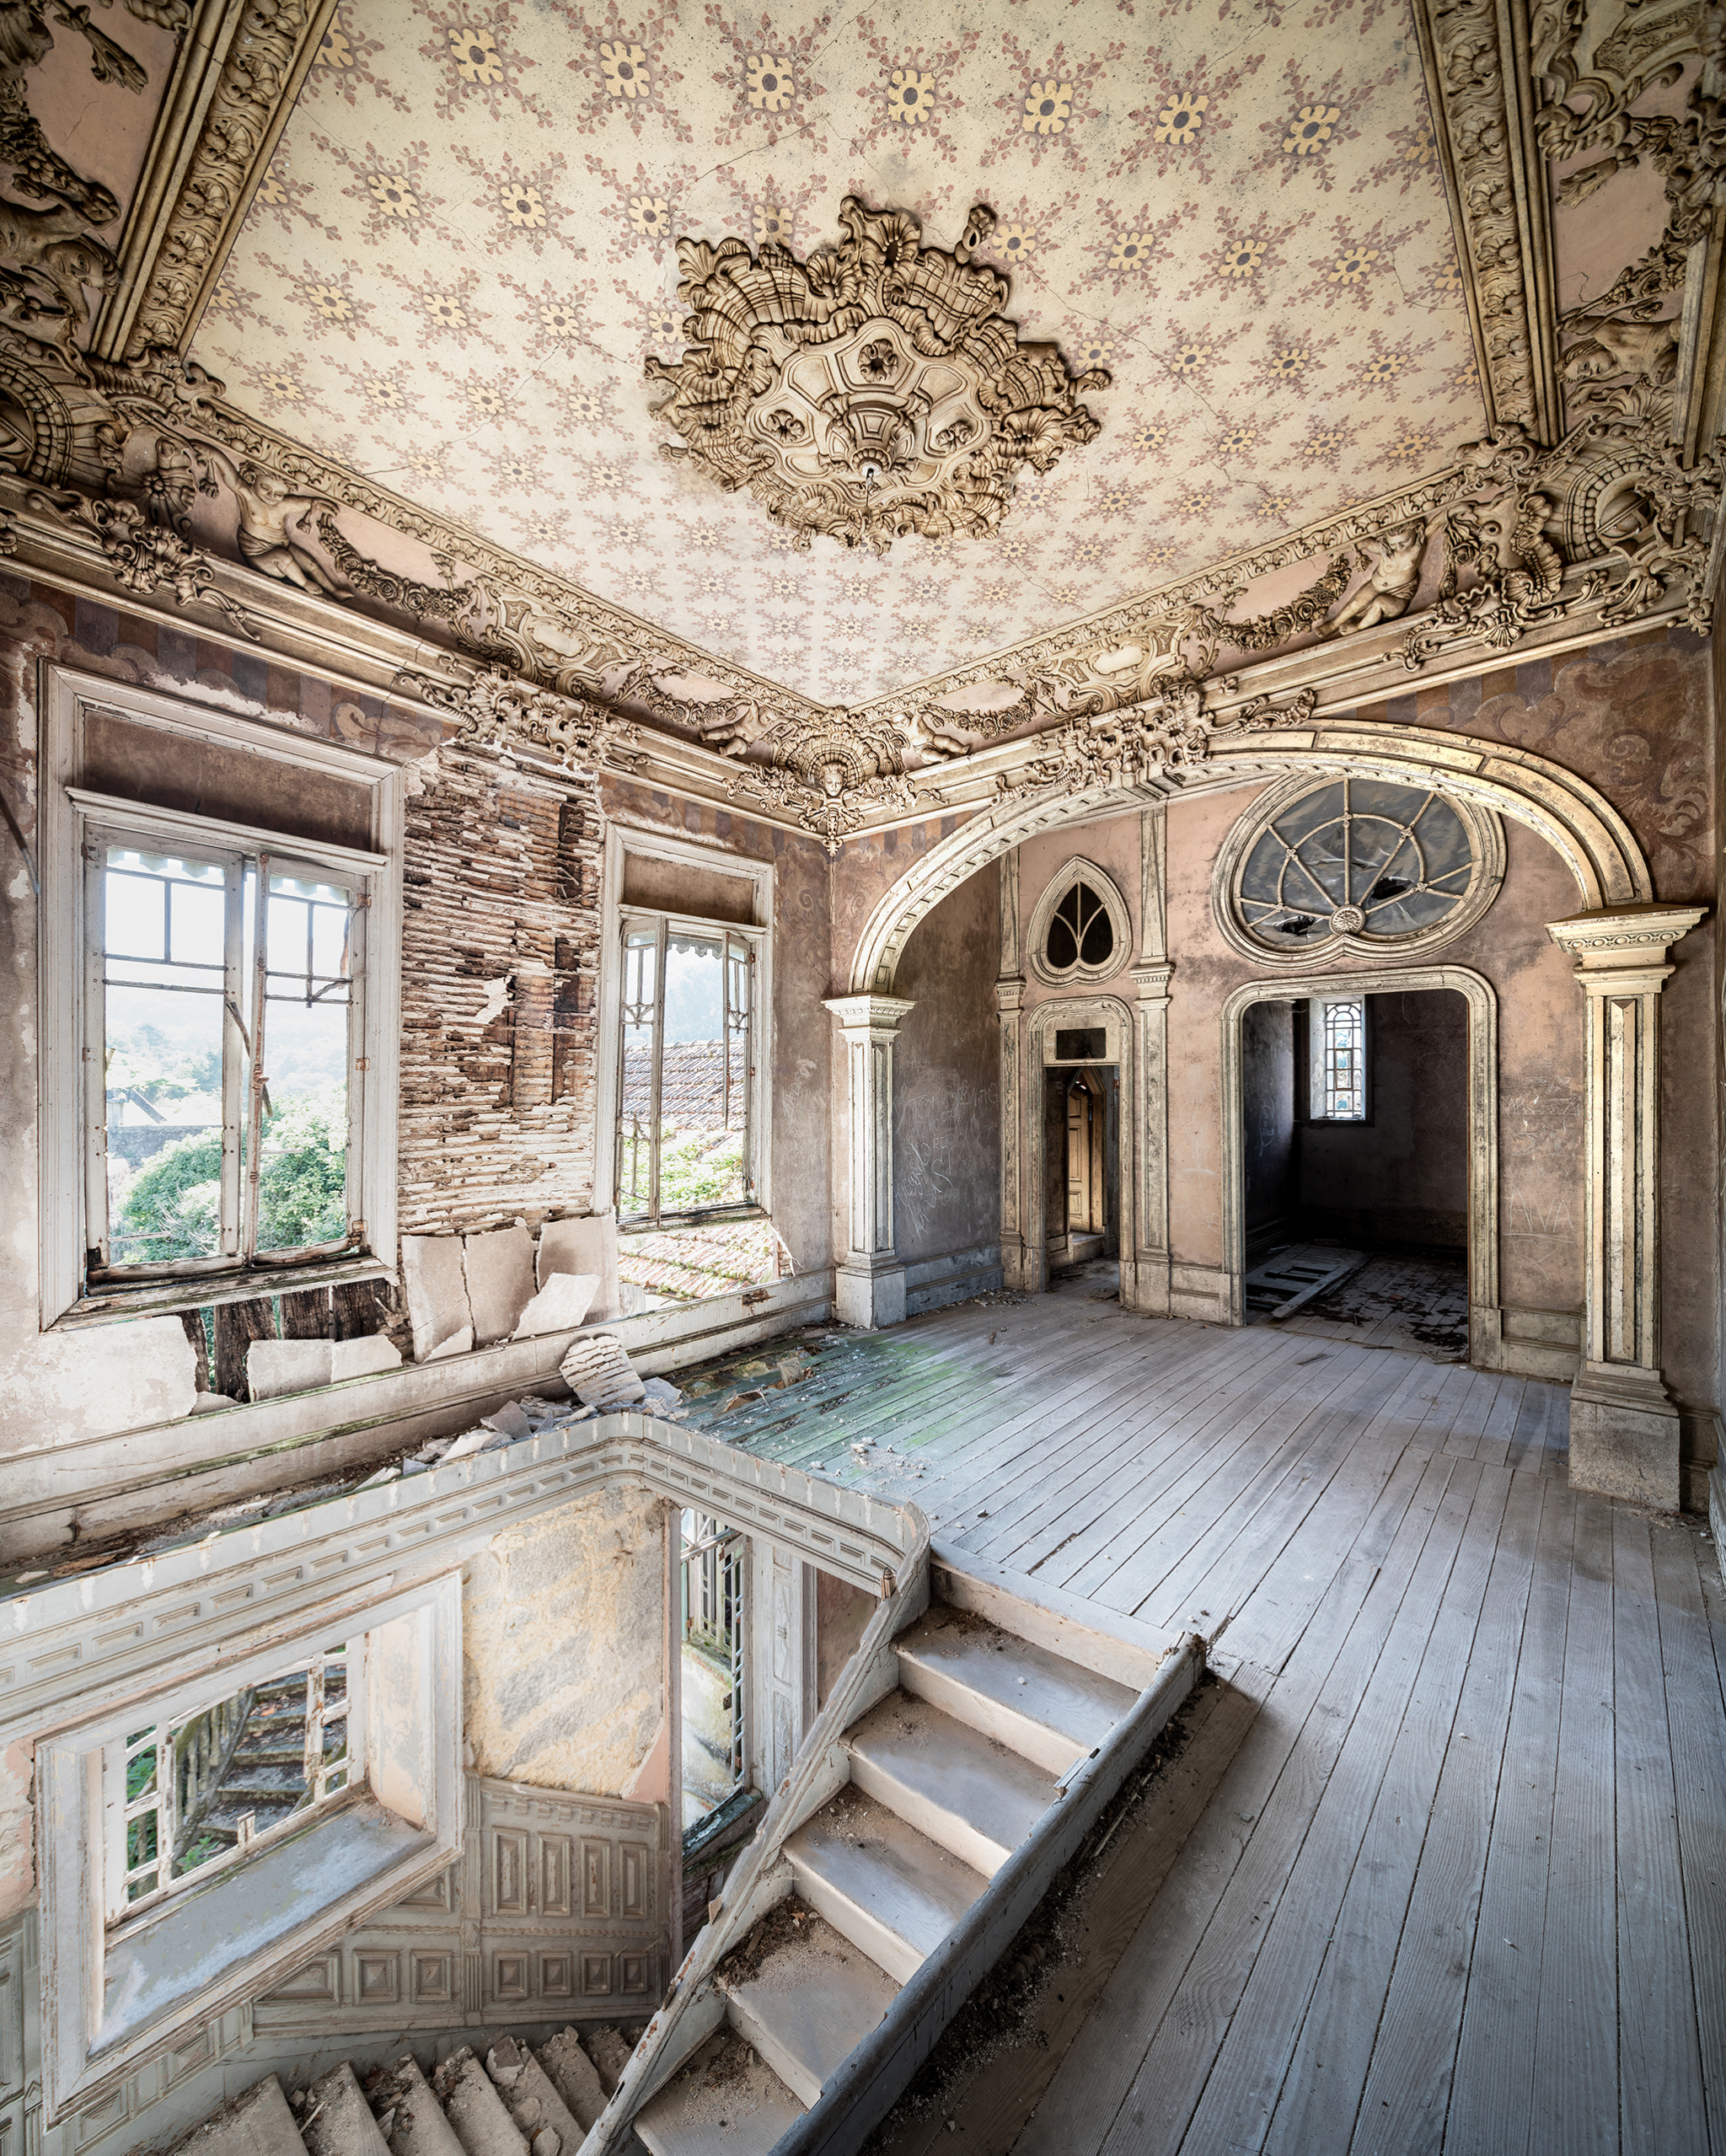 Jugendstil - Abandoned Palace in Portugal